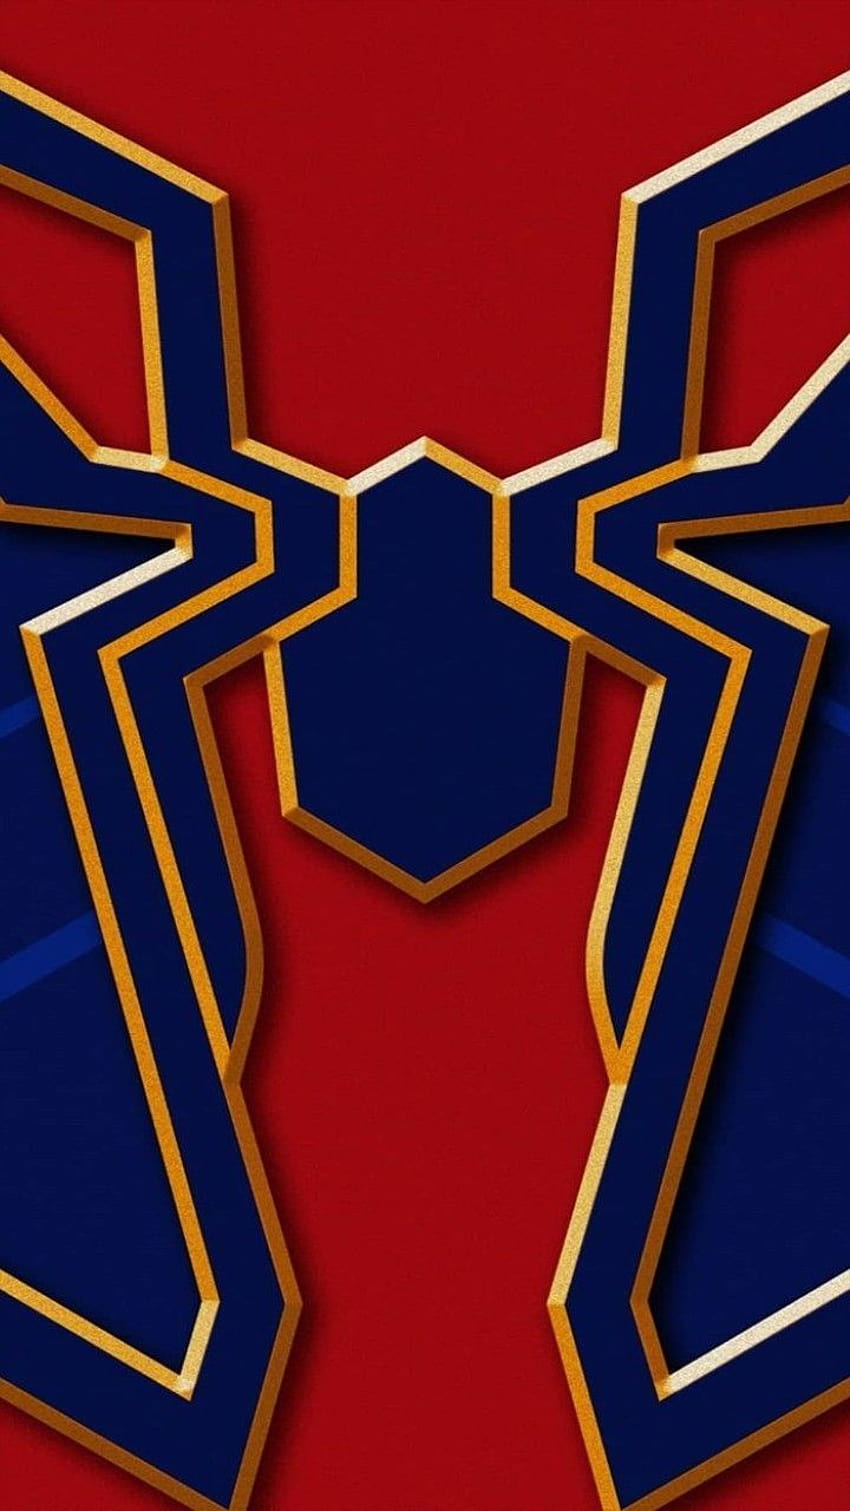 Avenger Endgame iPhone 795a0416f7b99beae4a9760de5d519a4, logotipo de araña de hierro fondo de pantalla del teléfono